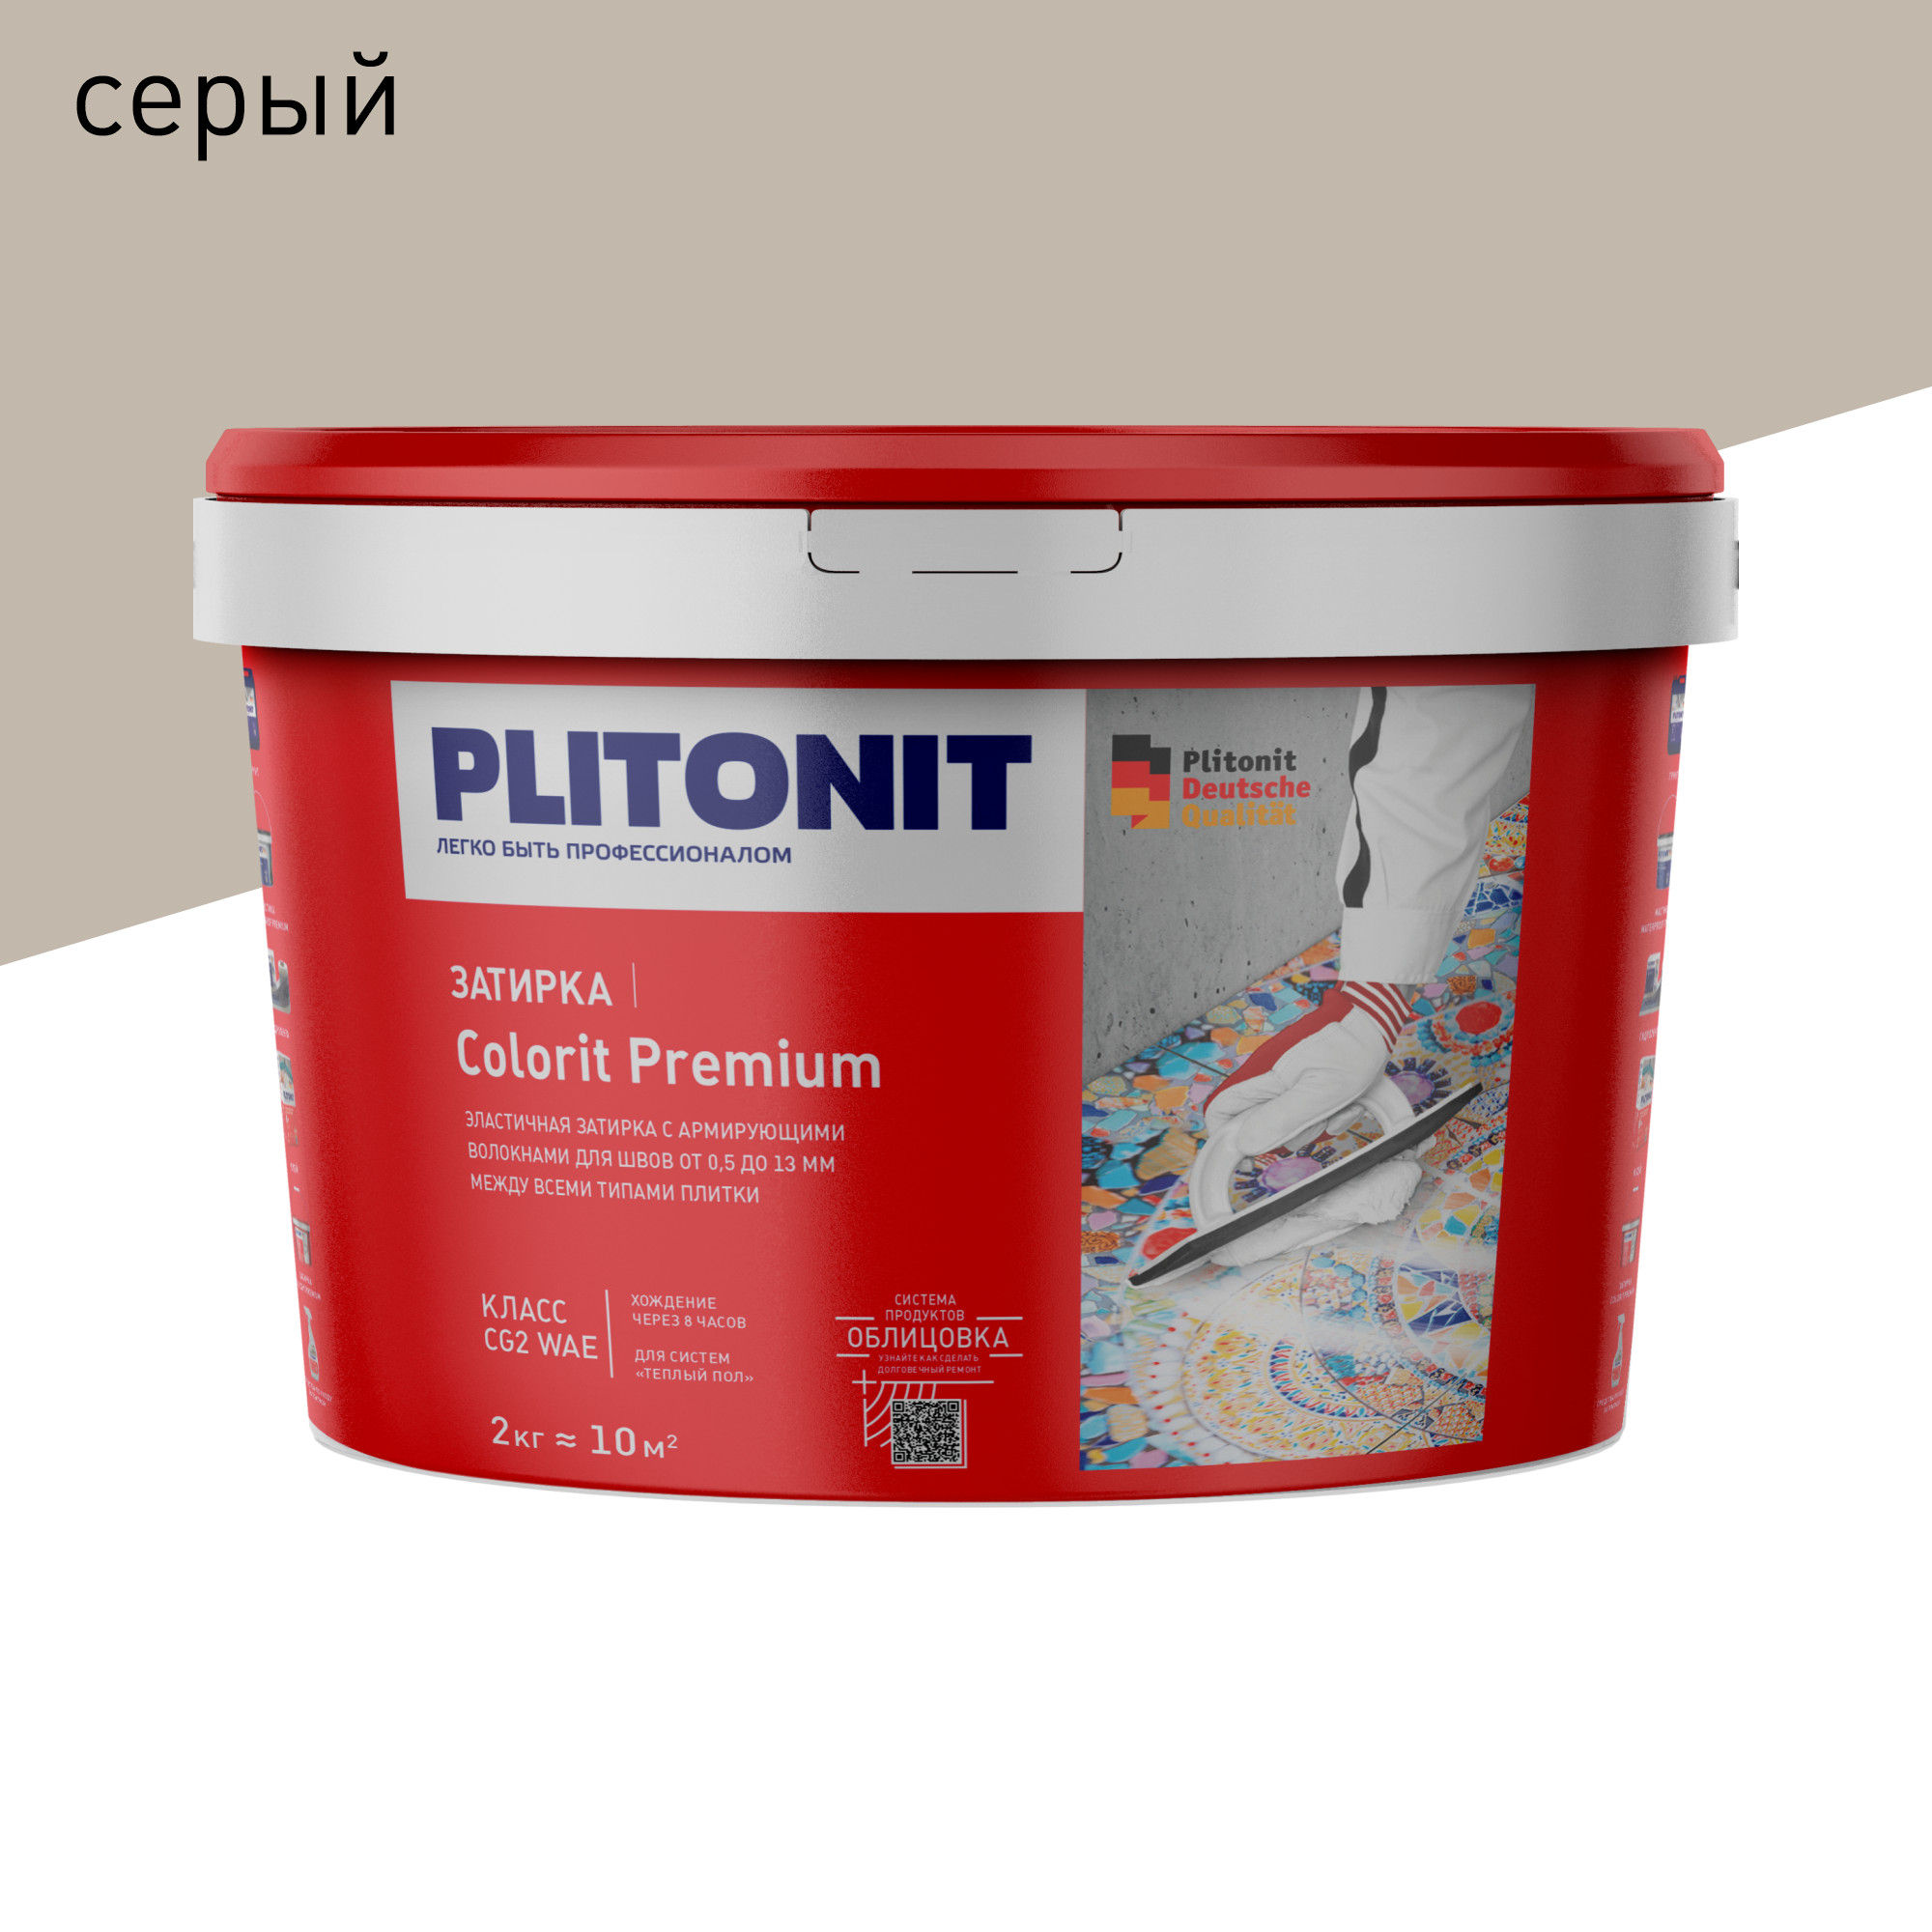 Затирка PLITONIT Colorit Premium серая 2 кг затирка эпоксидная plitonit colorit easyfill титановая 2 кг